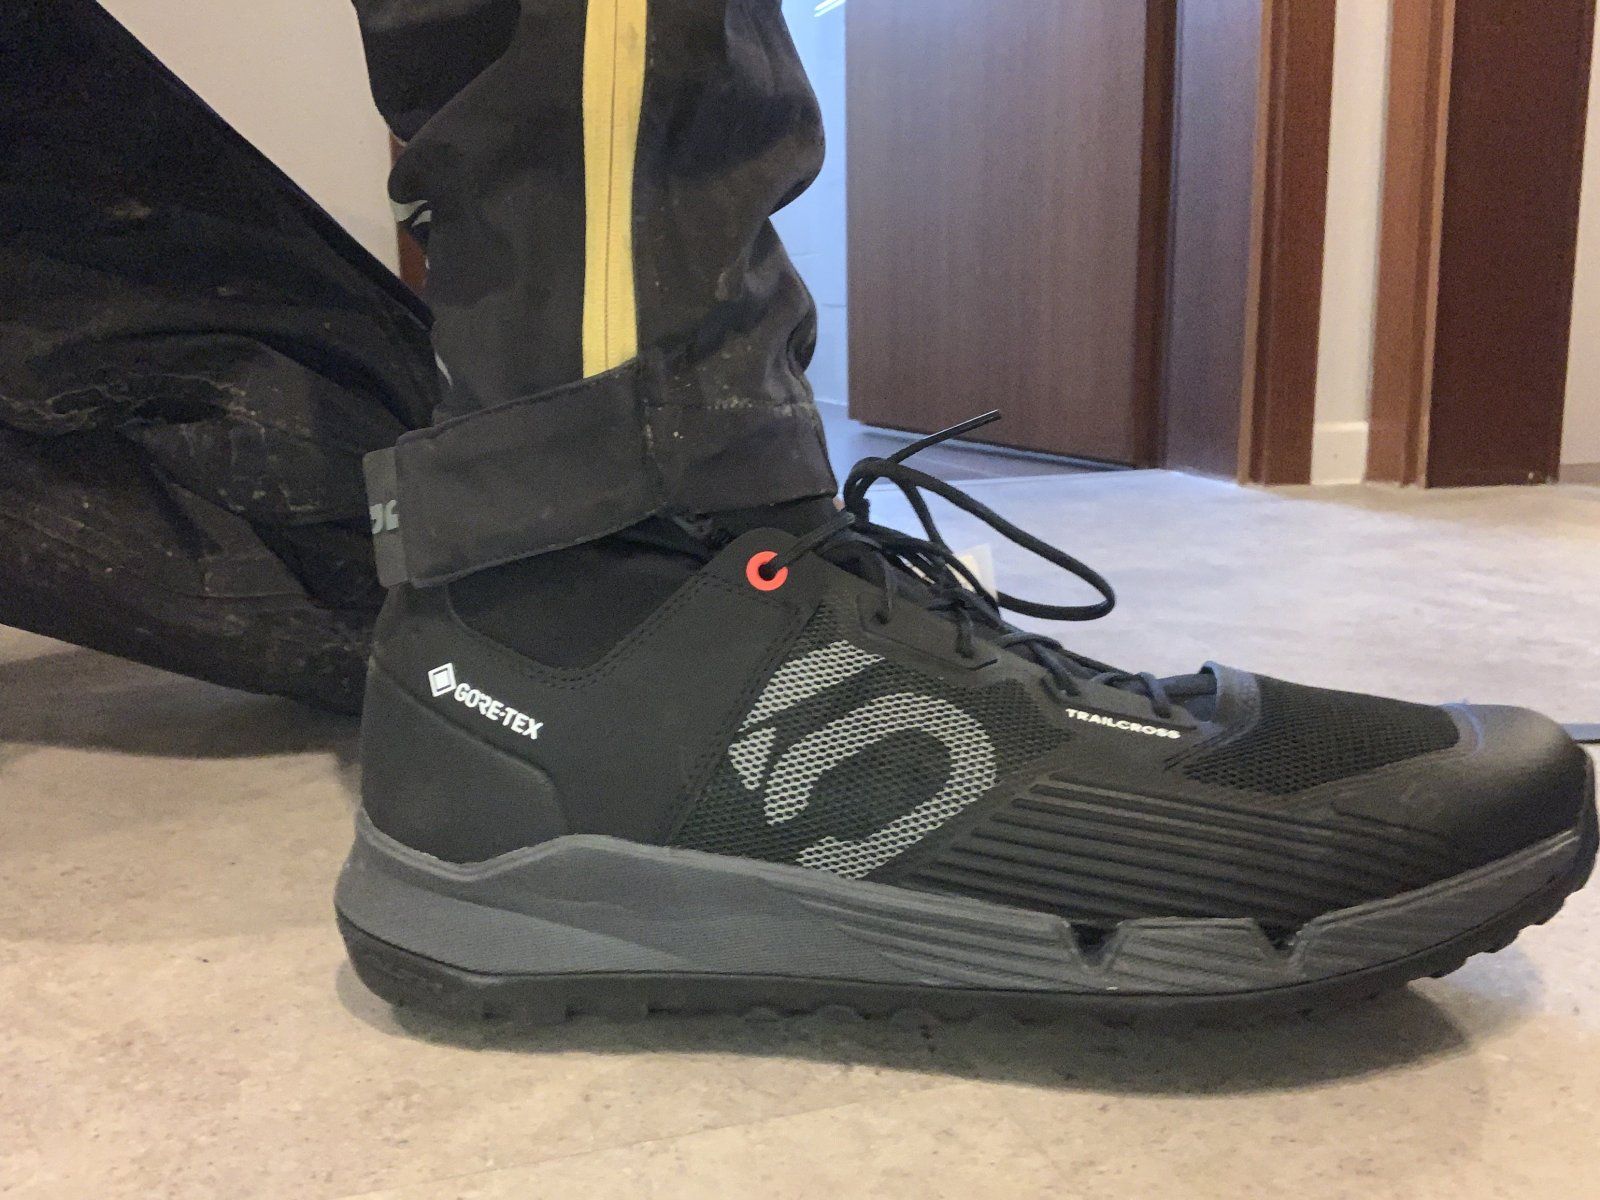 Adidas Five Ten Trailcross GTX MTB-Schuh im Test: Komplett wasserdicht!